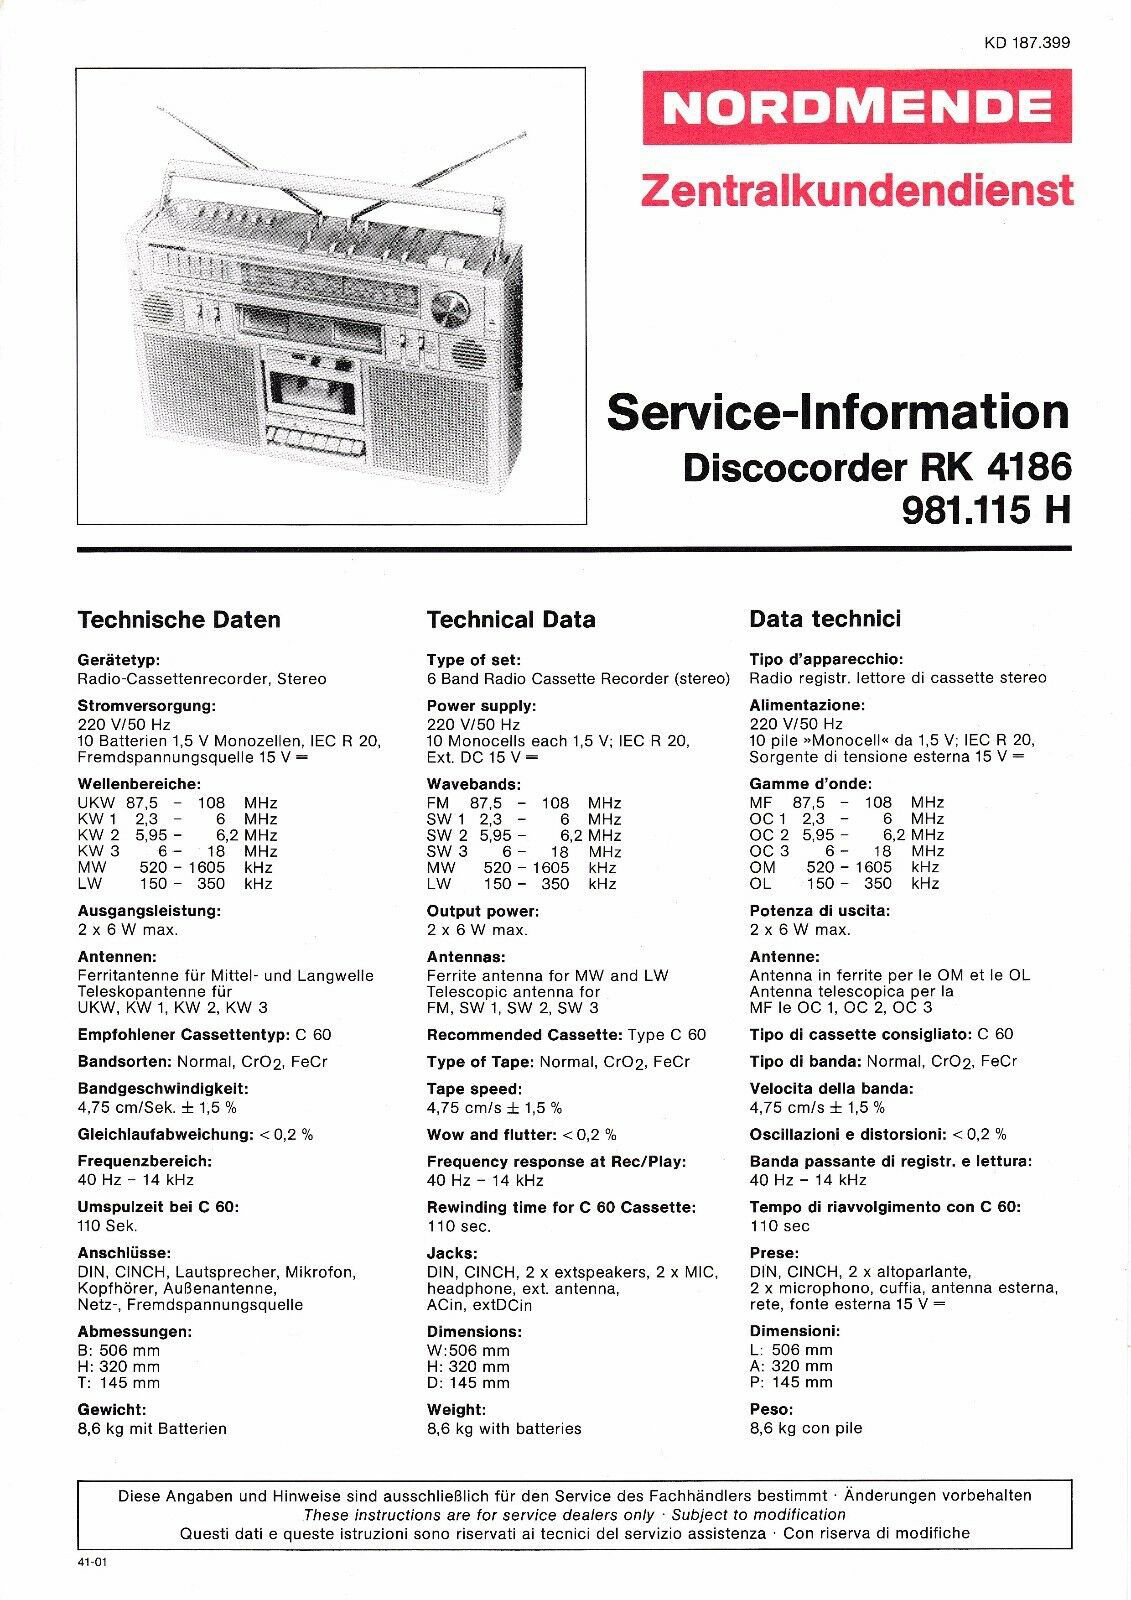 Service-Manual-Anleitung-für-Nordmende-Discocorder-RK-4186-981115.jpg